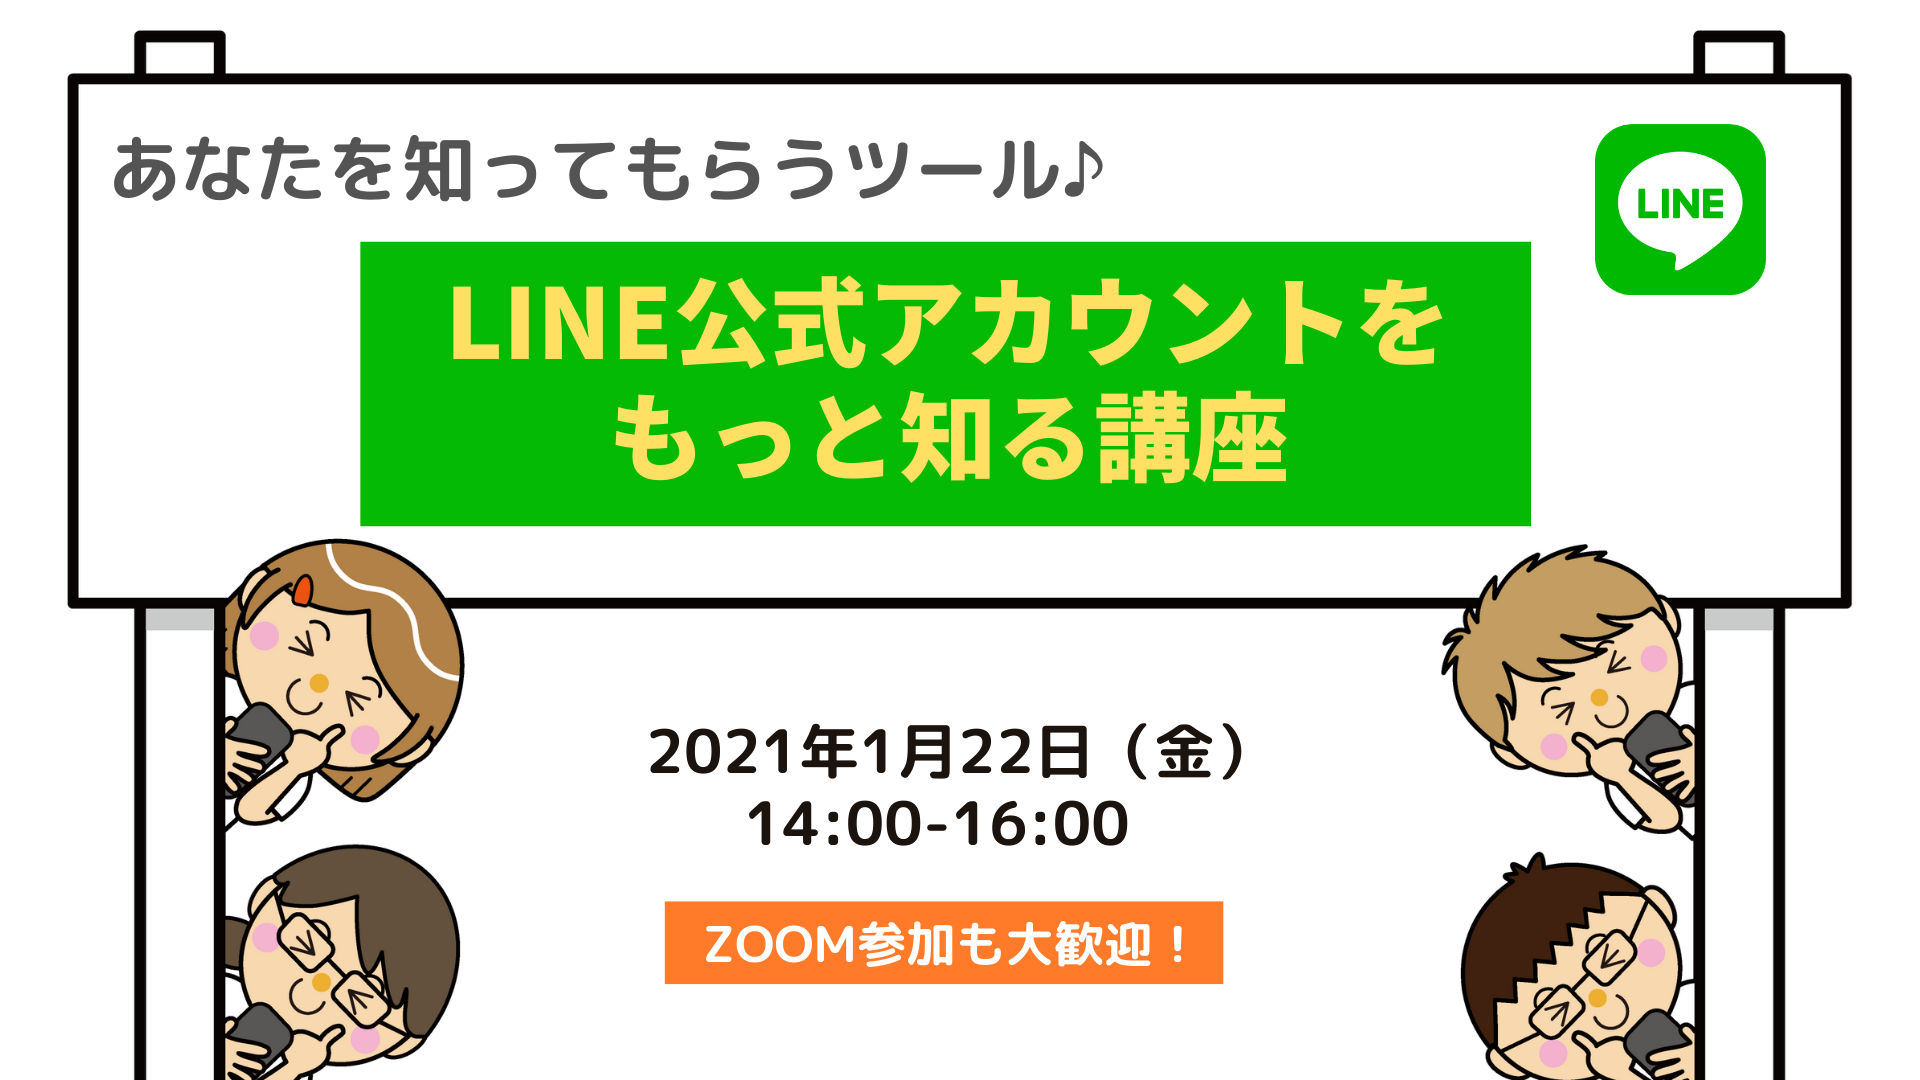 1/22　☆ZOOM参加OK☆あなたを知ってもらうツール LINE公式アカウントをもっと知る講座